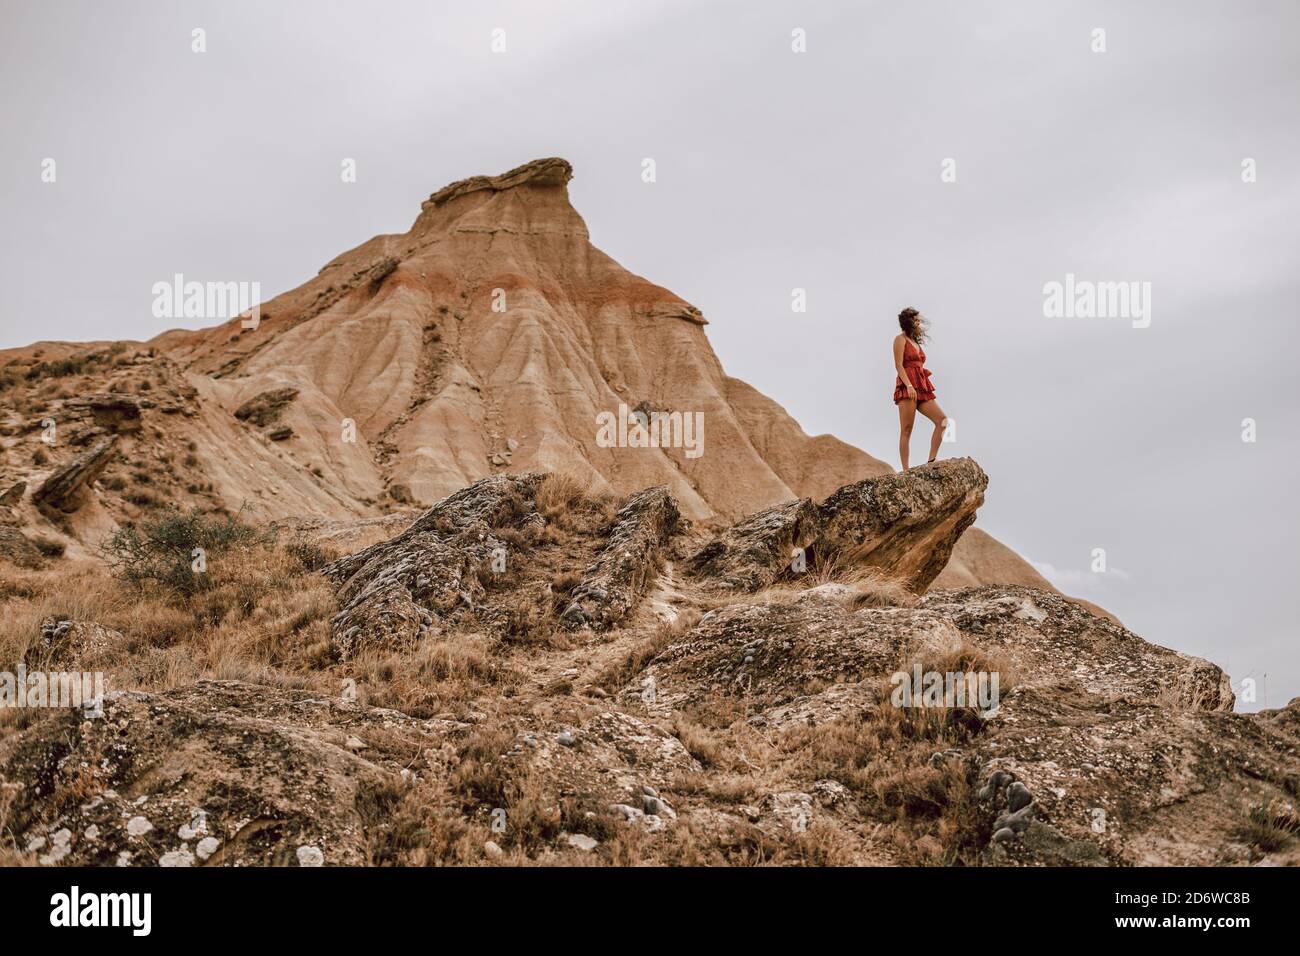 Frau auf einem roten Kleid auf einem Felsen in einer desertischen Landschaft in der Barcenas Reales Wüste in Navarra, Spanien Stockfoto